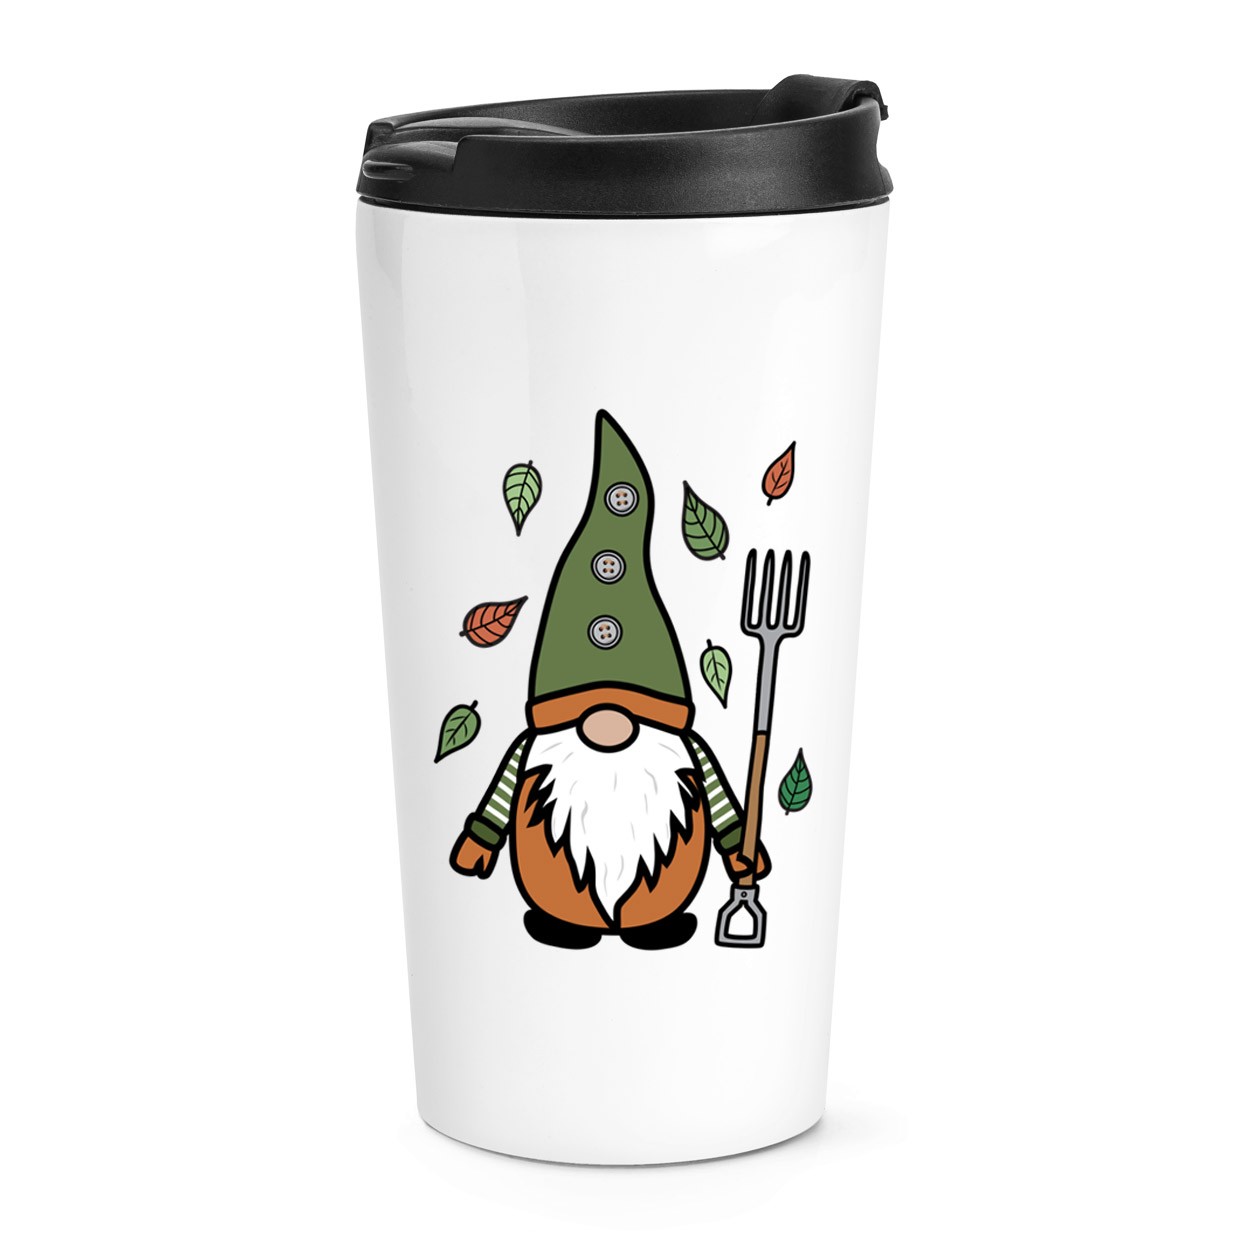 Gonk Gnome Green Orange Garden Travel Mug Cup